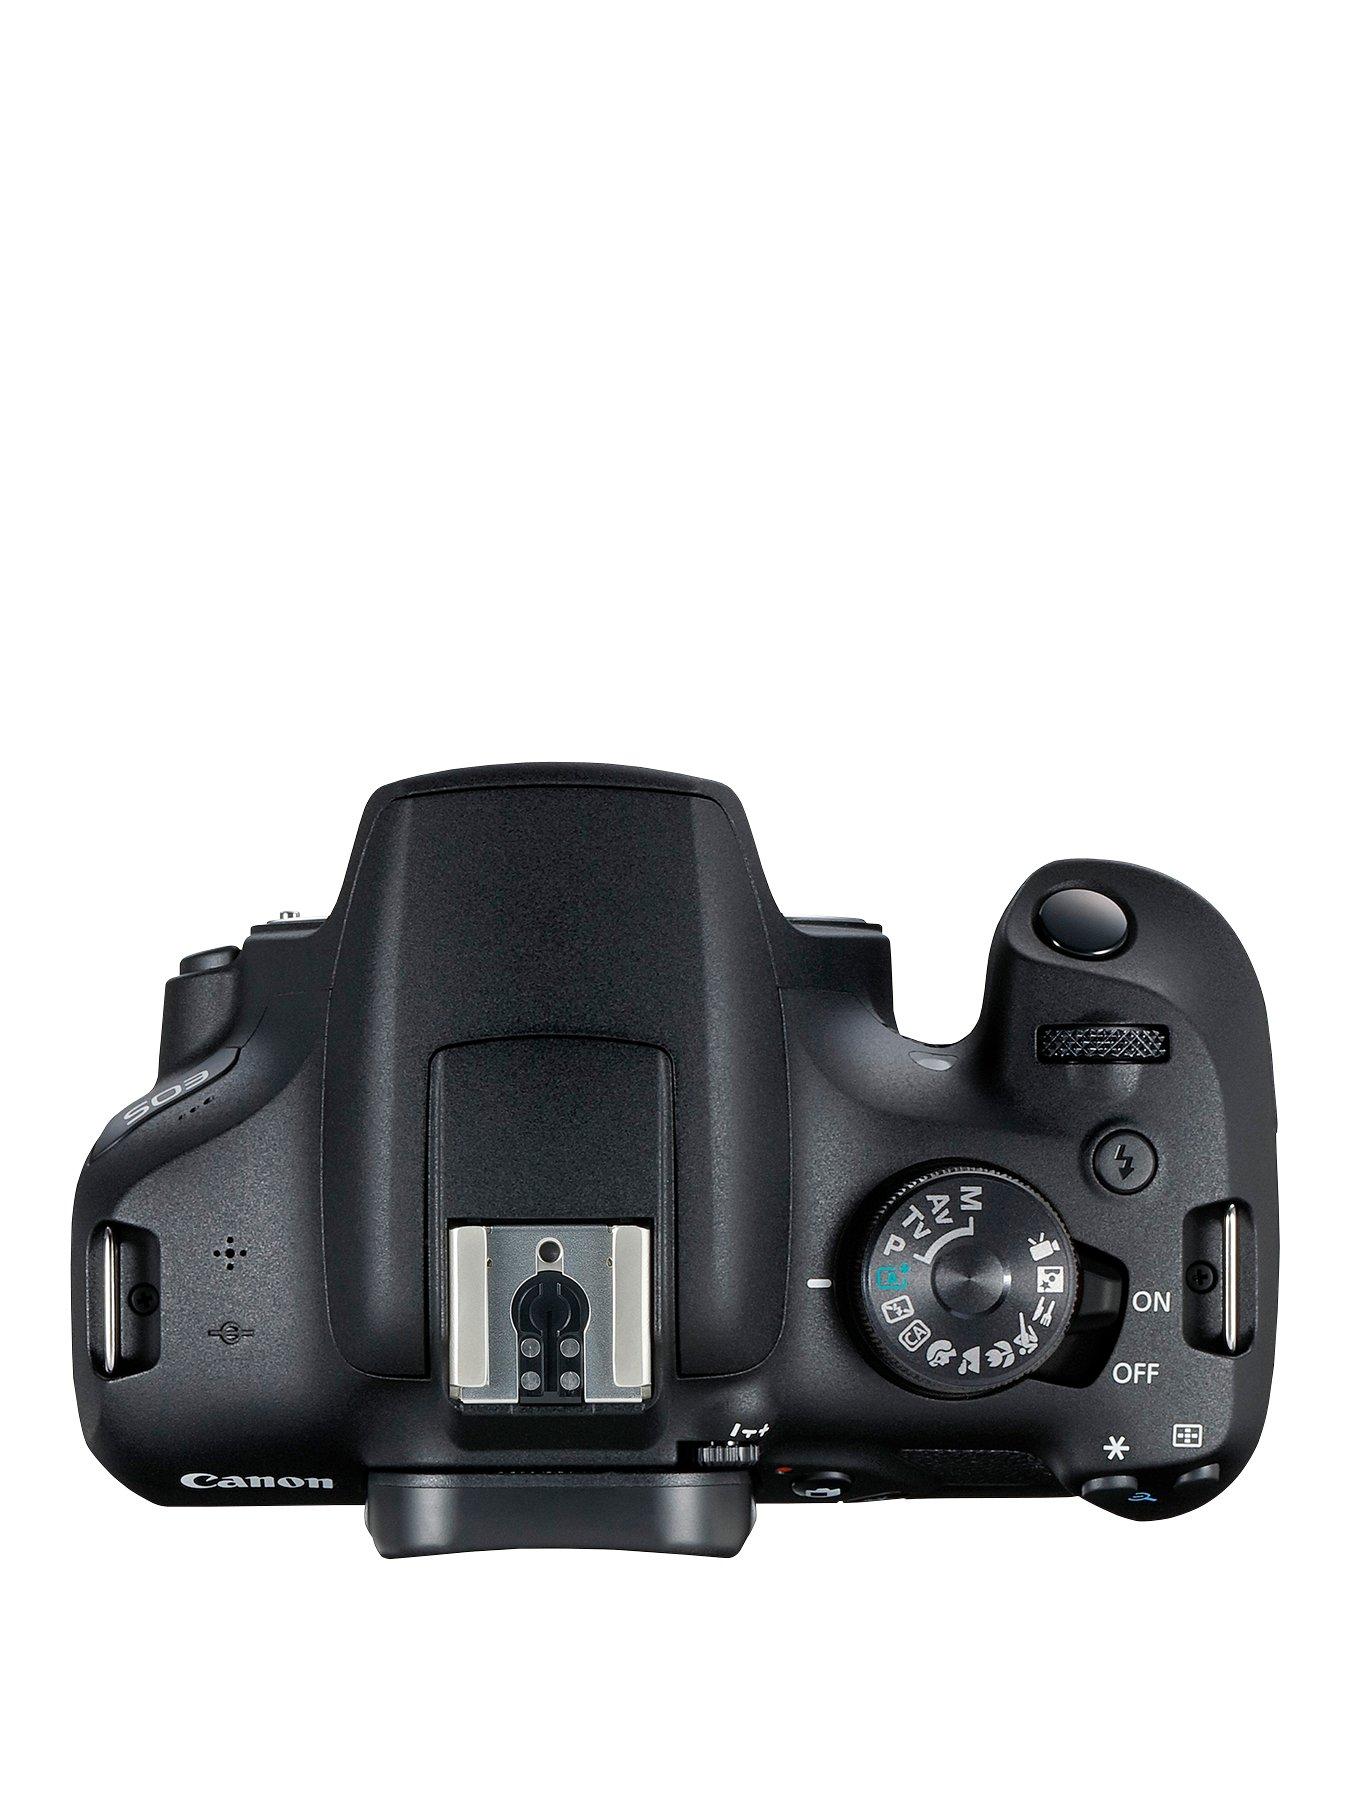 Canon EOS 2000D Dslr Camera & 18-55mm IS STM lens & Kit